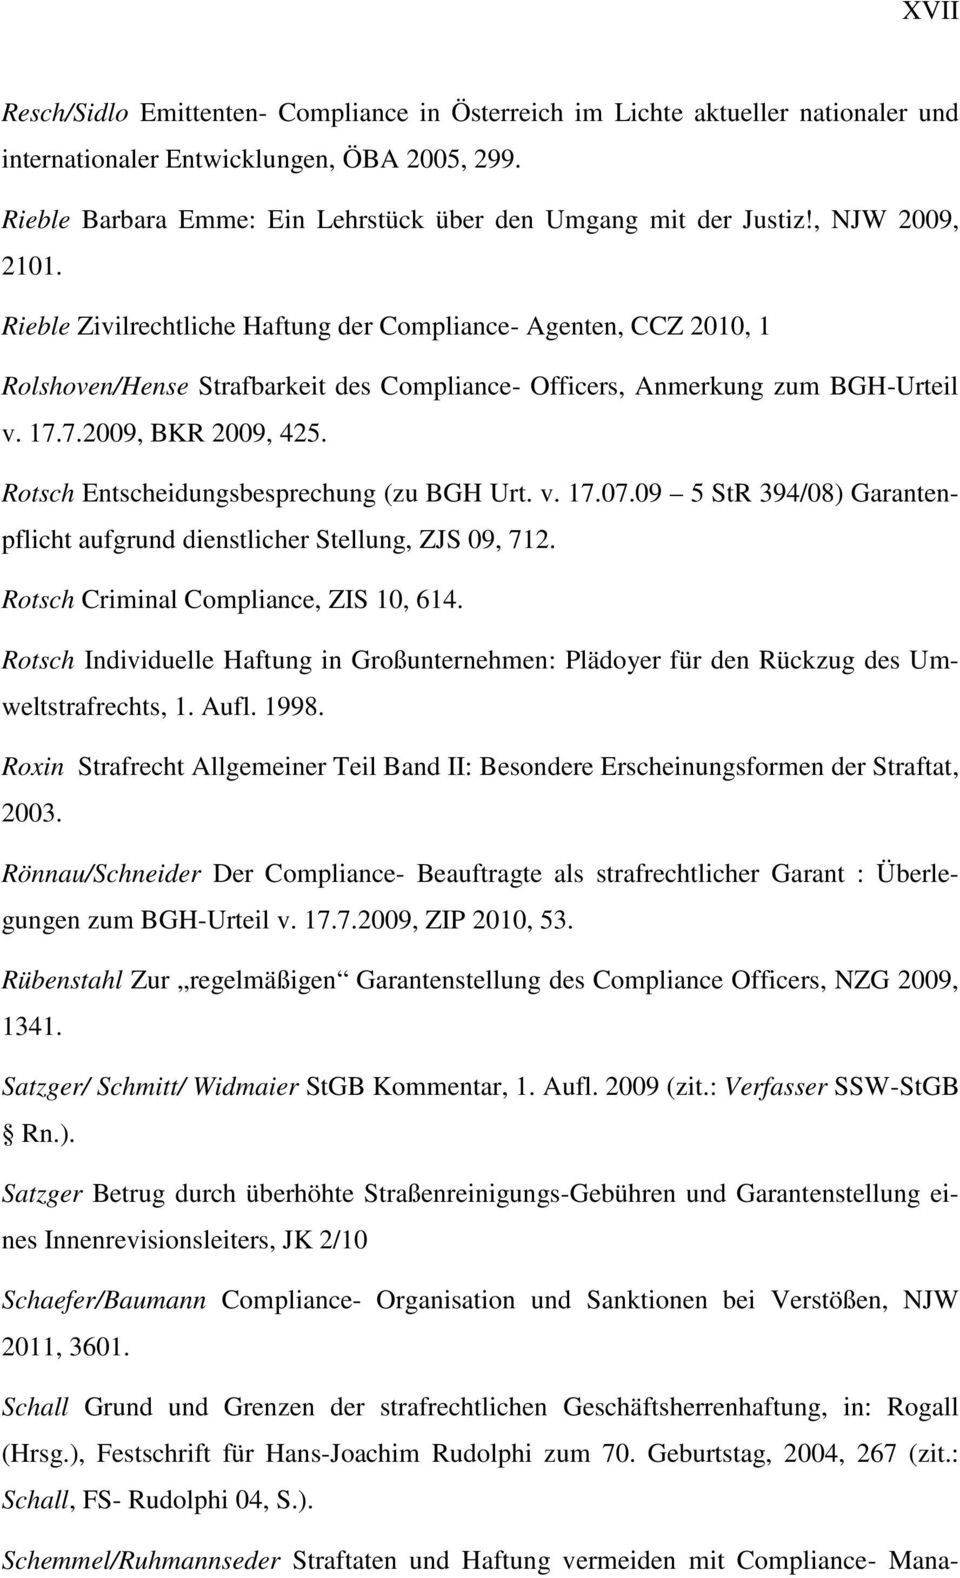 Rieble Zivilrechtliche Haftung der Compliance- Agenten, CCZ 2010, 1 Rolshoven/Hense Strafbarkeit des Compliance- Officers, Anmerkung zum BGH-Urteil v. 17.7.2009, BKR 2009, 425.